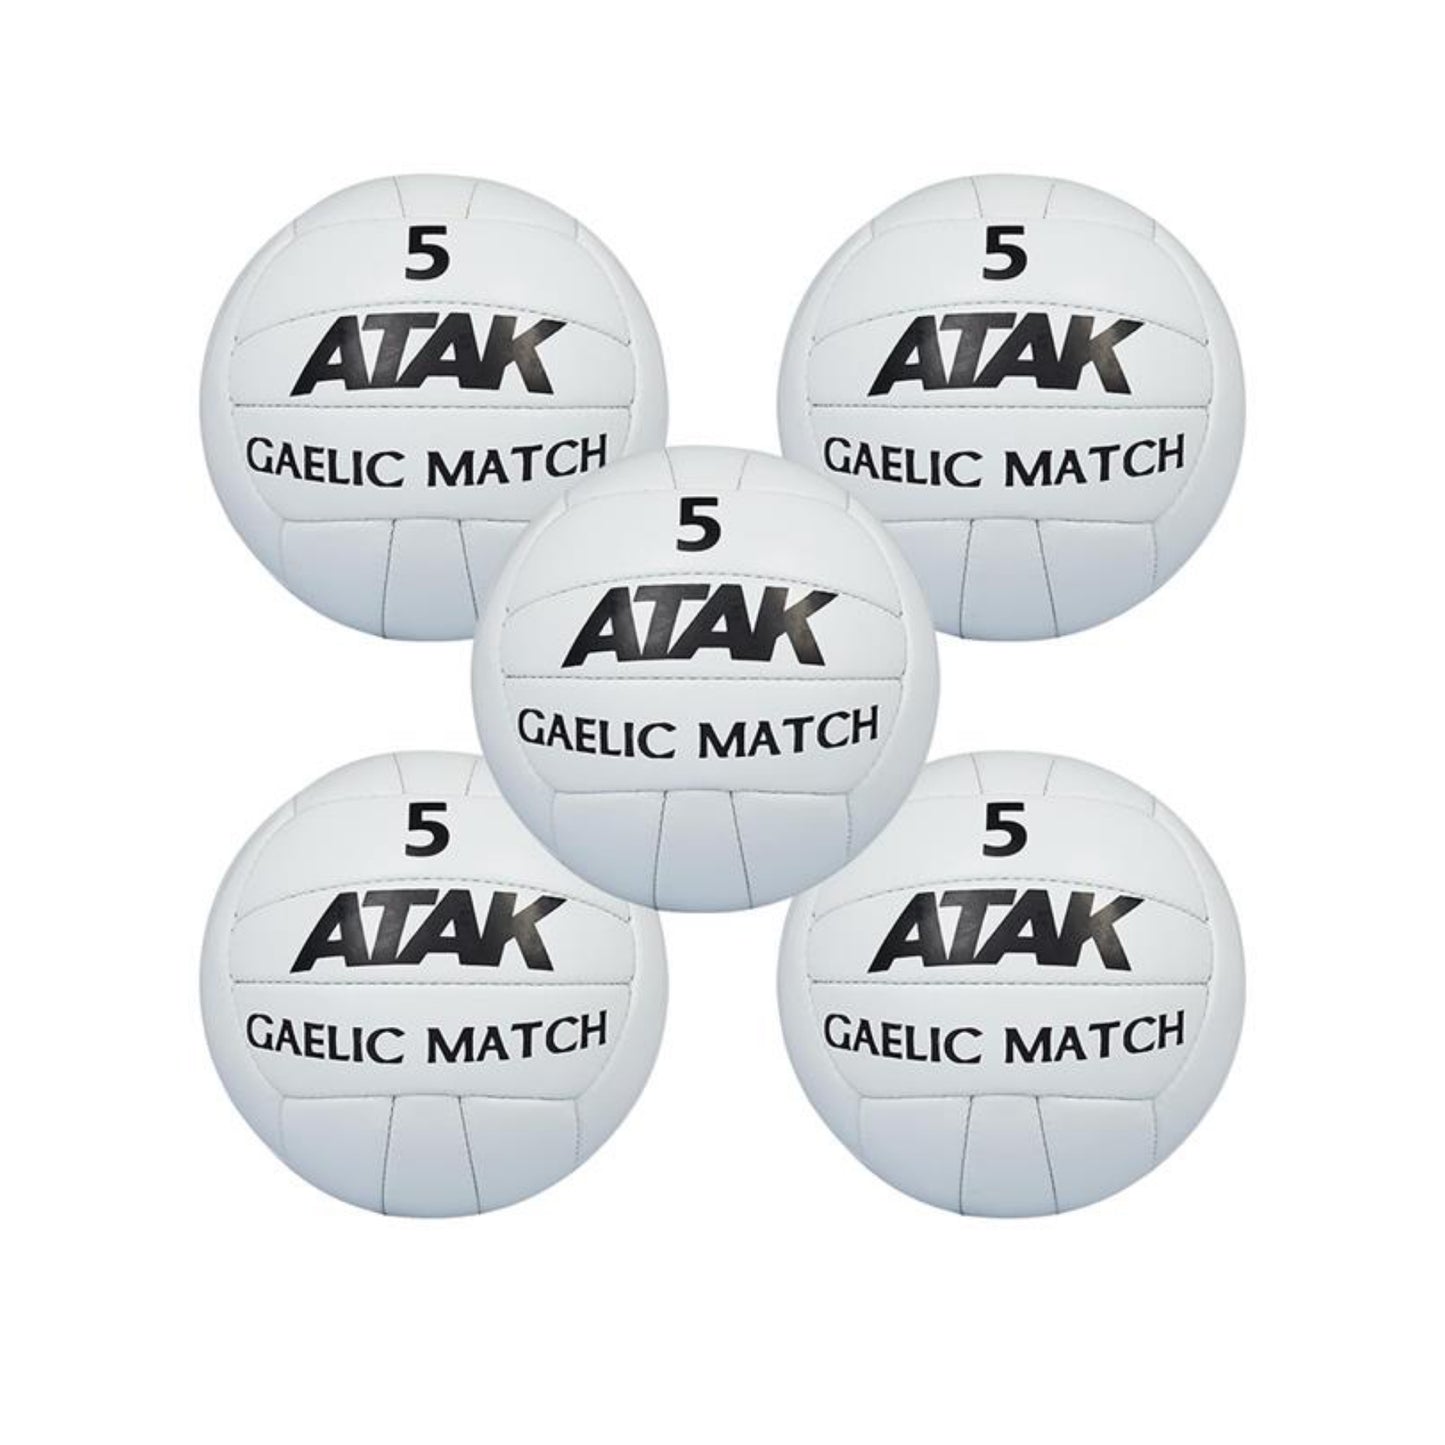 ATAK MATCH GAELIC FOOTBALL - SIZE 5 (5 PACK)